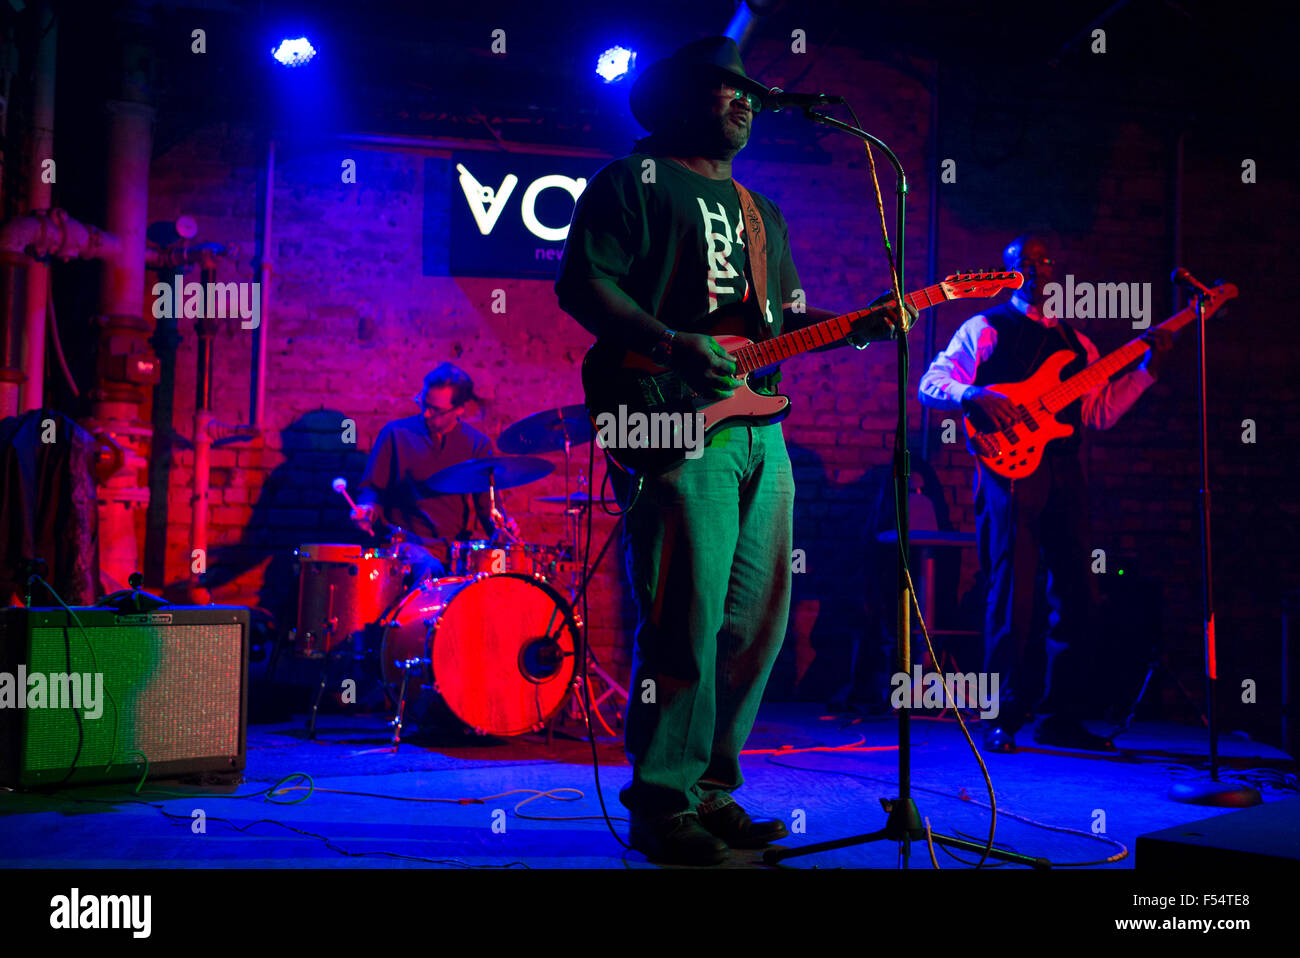 Guitariste Blues band batterie jouant Vaso live jazz club, Decatur Français Street, Marigny, French Quarter New Orleans USA Banque D'Images